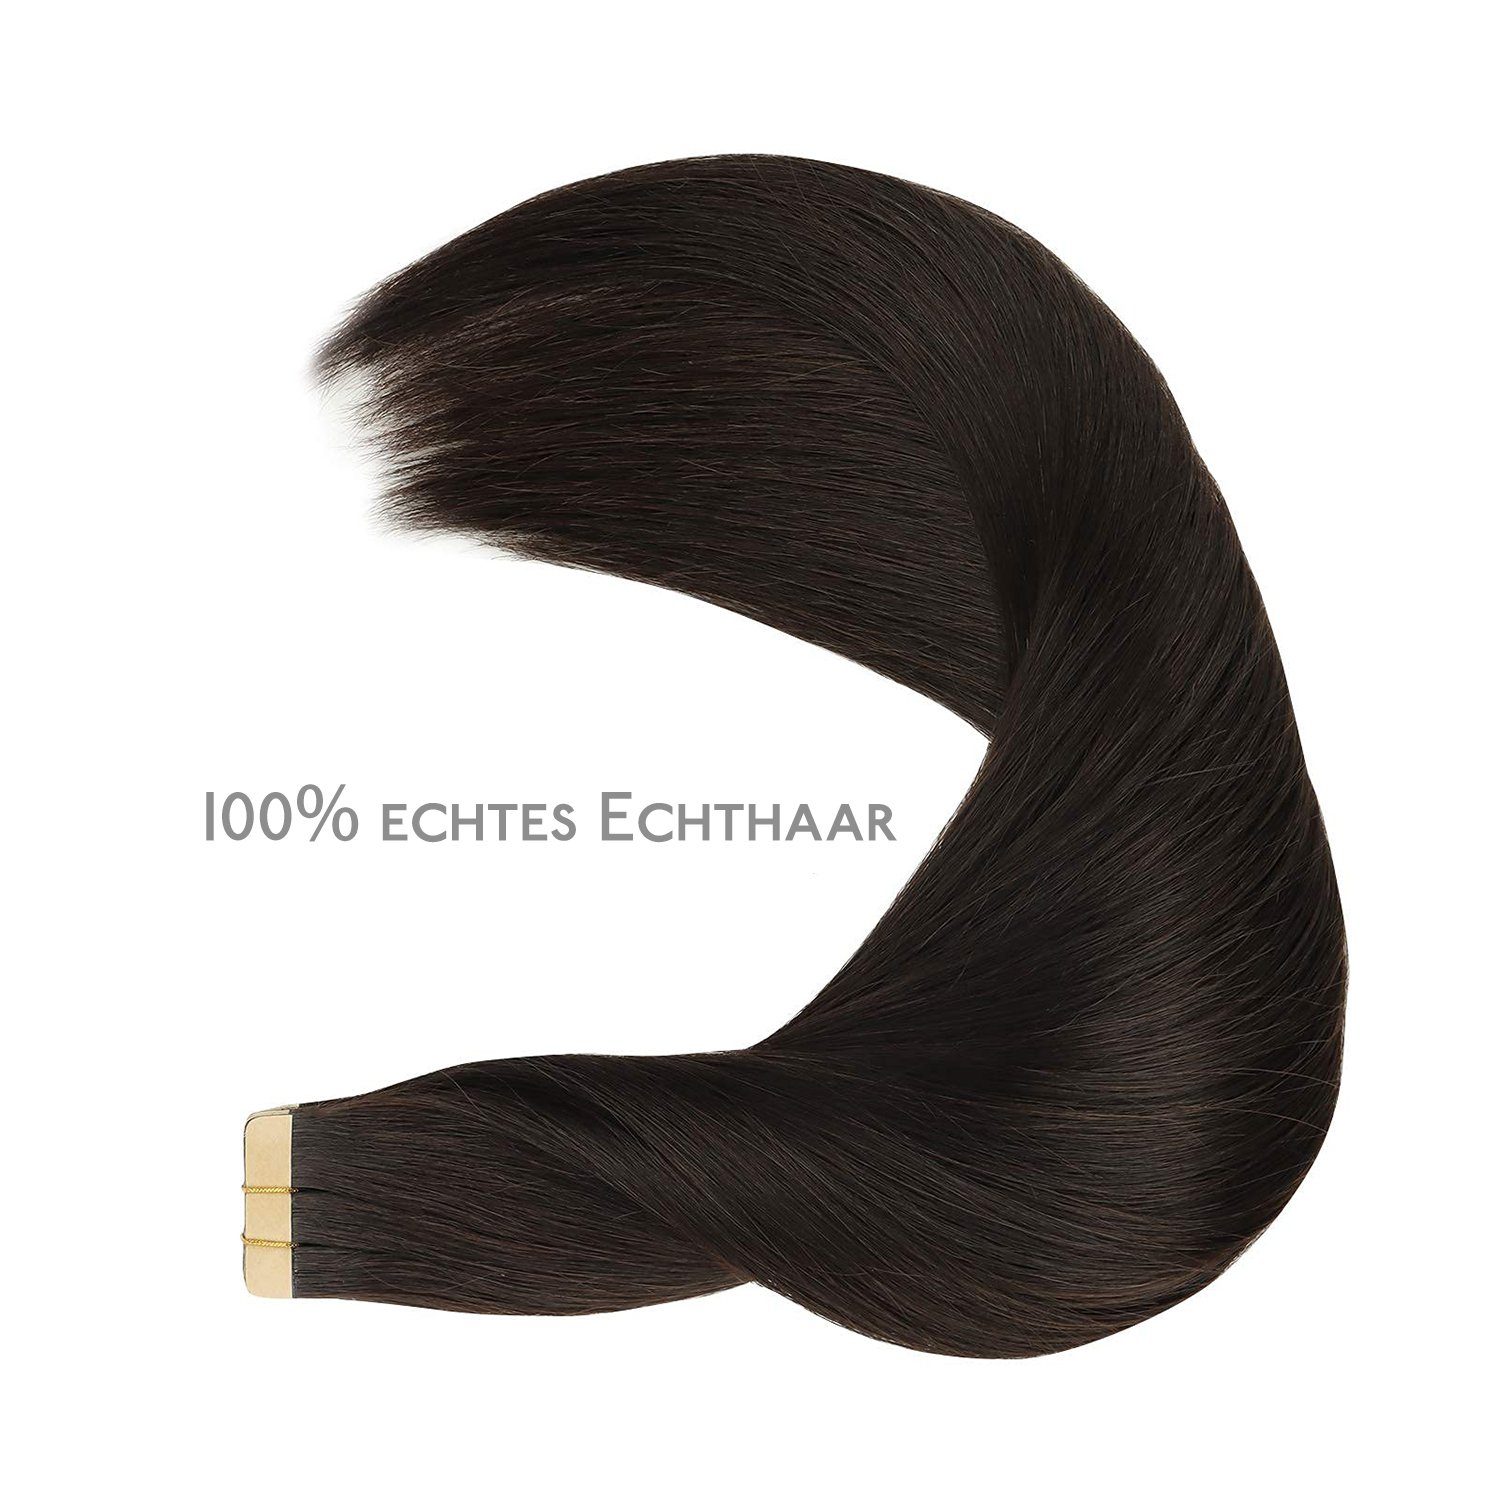 Echthaarverlängerungen, 20 % Stück Wennalife dunkelbraun Klebeband Echthaar-Extension Haar, im 100